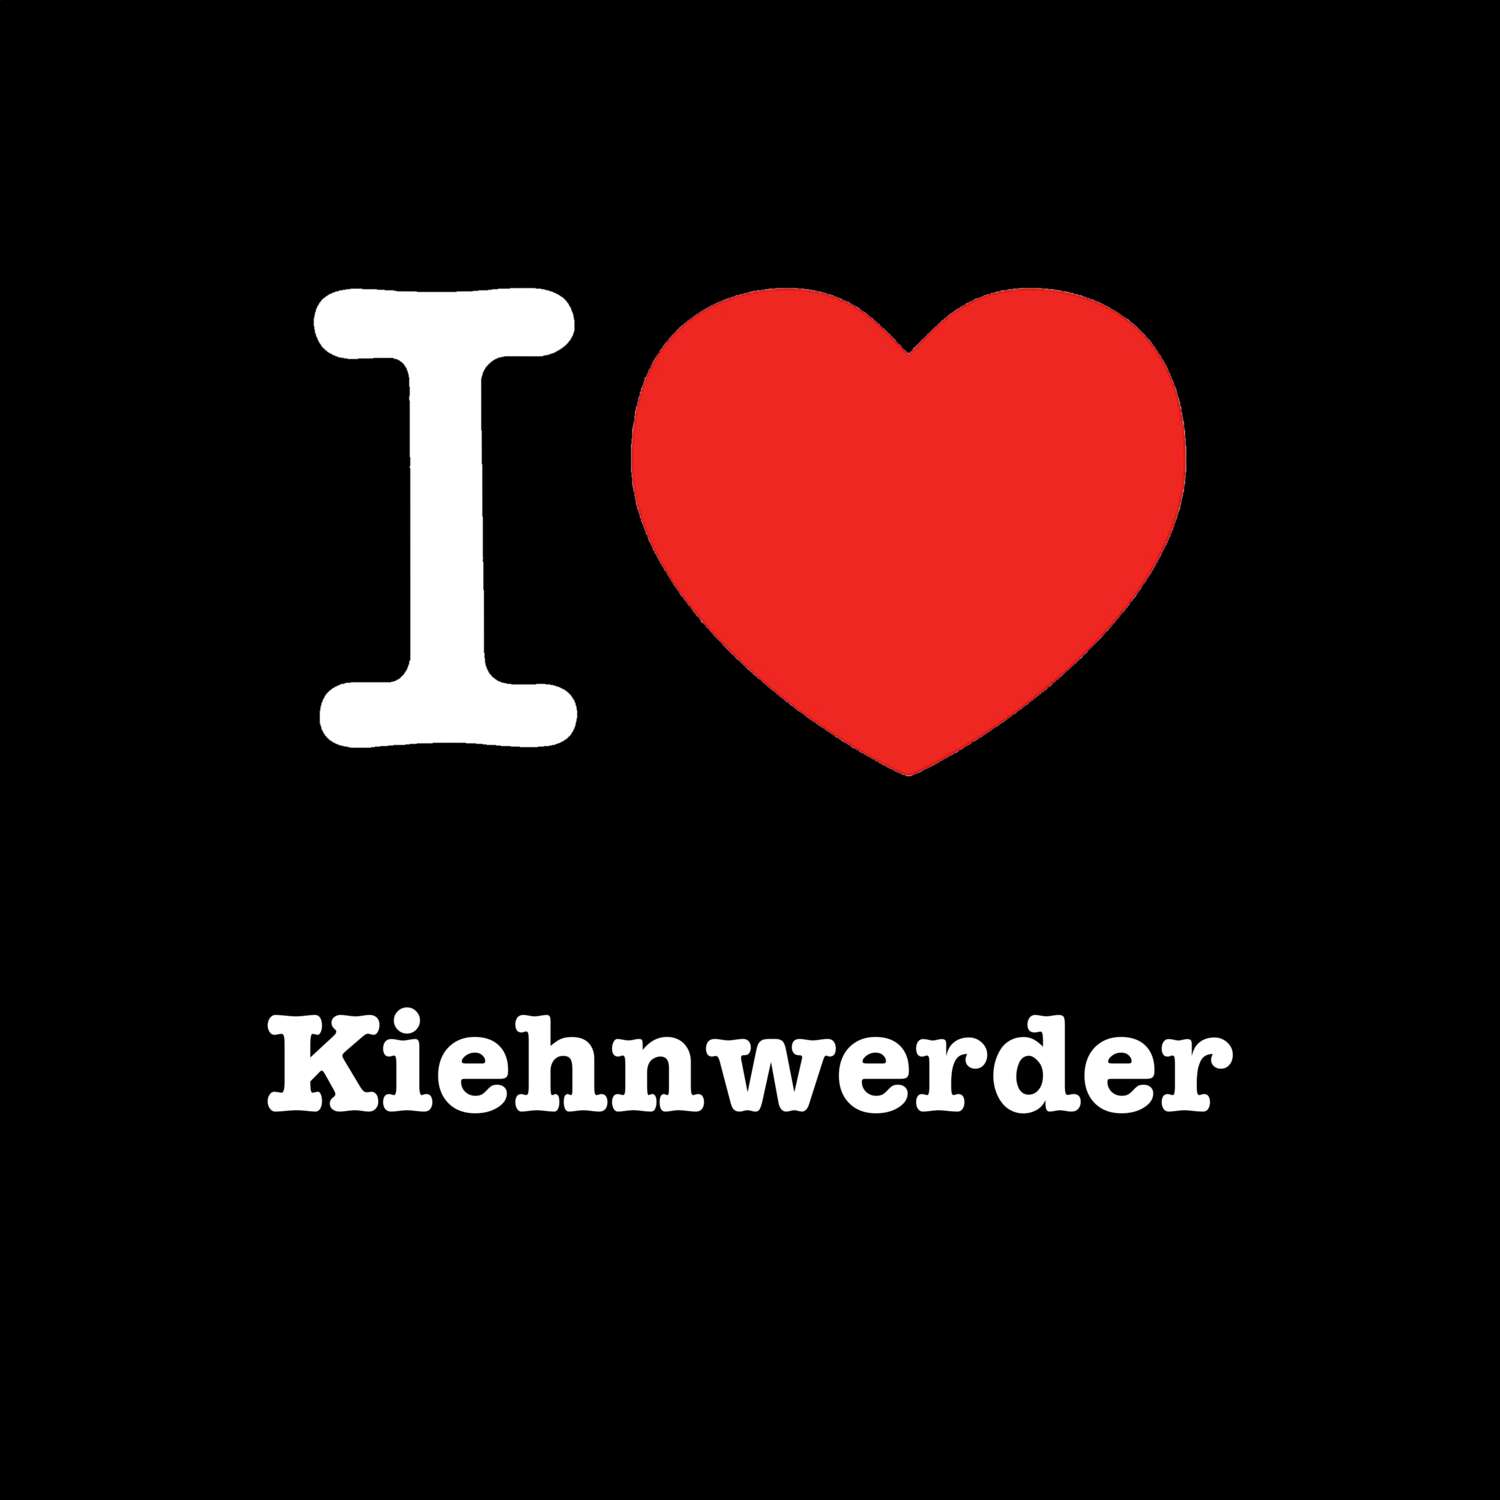 Kiehnwerder T-Shirt »I love«